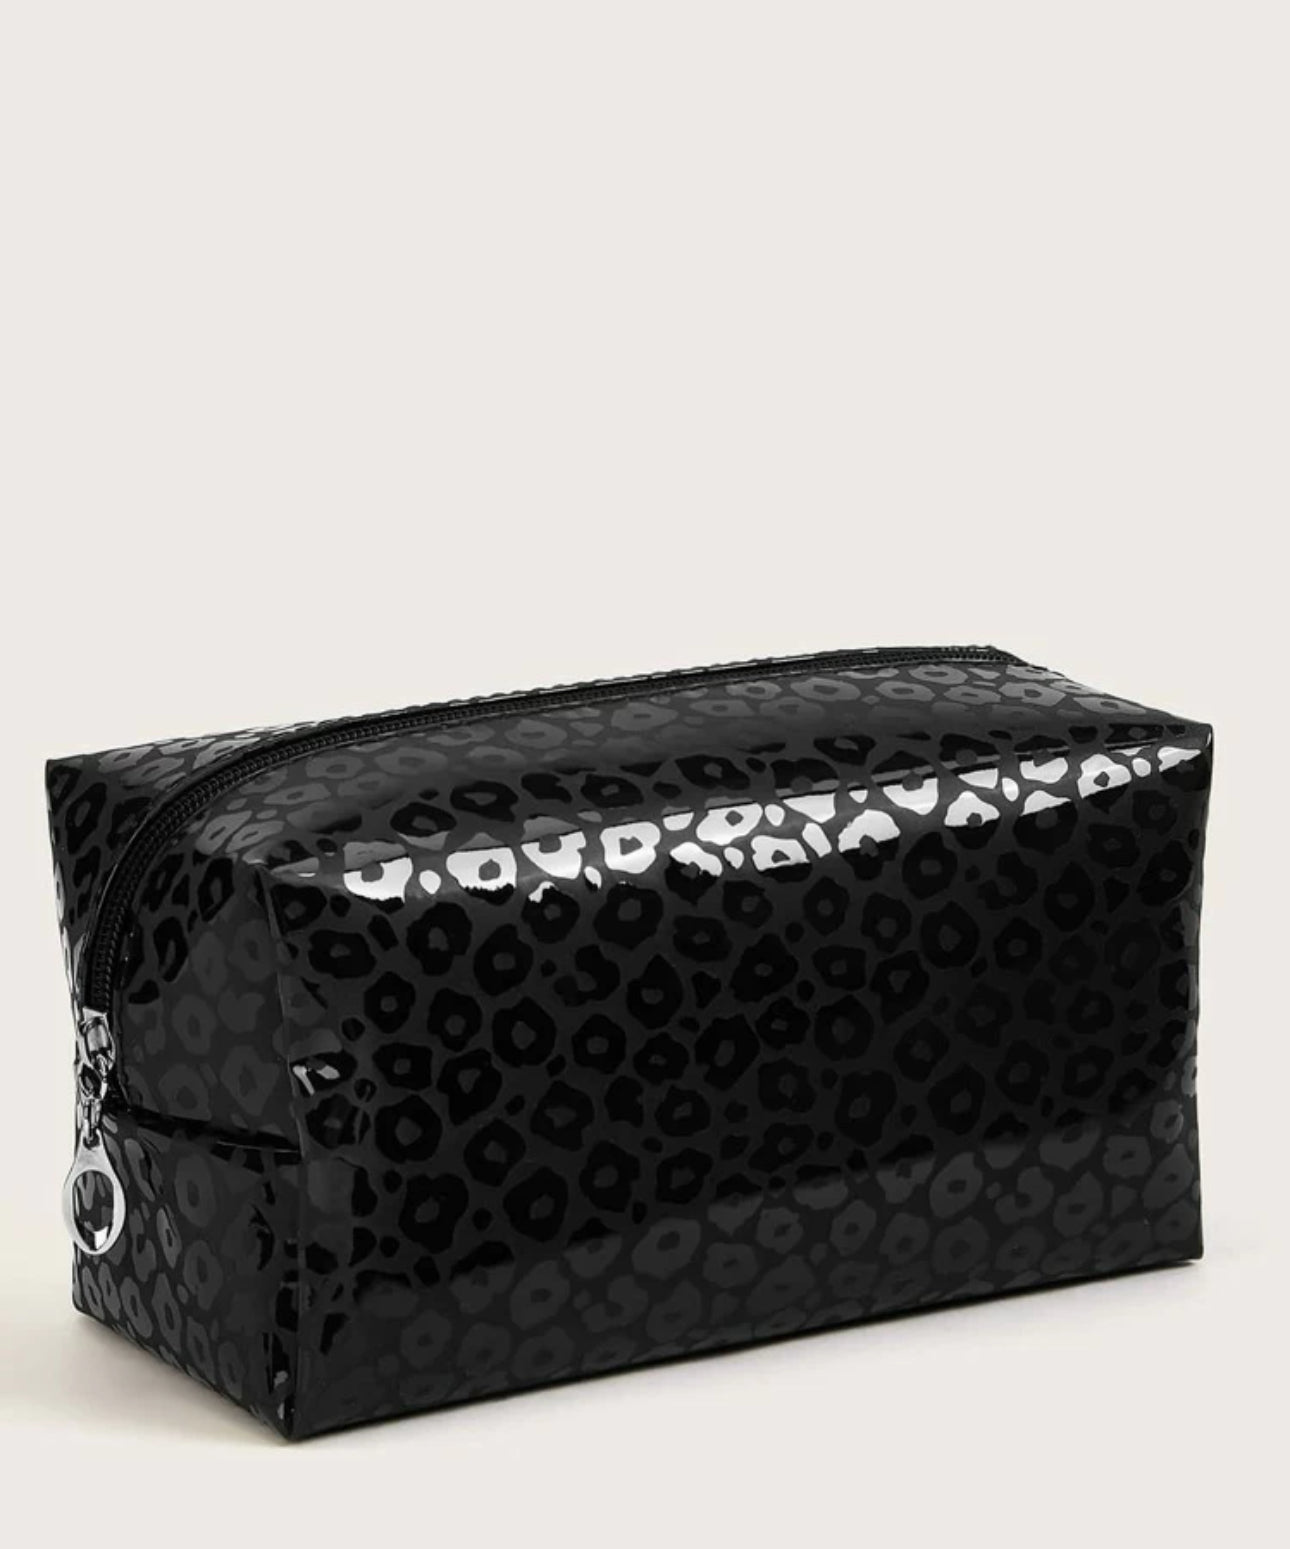 SR19 Leopard Print Makeup Bag